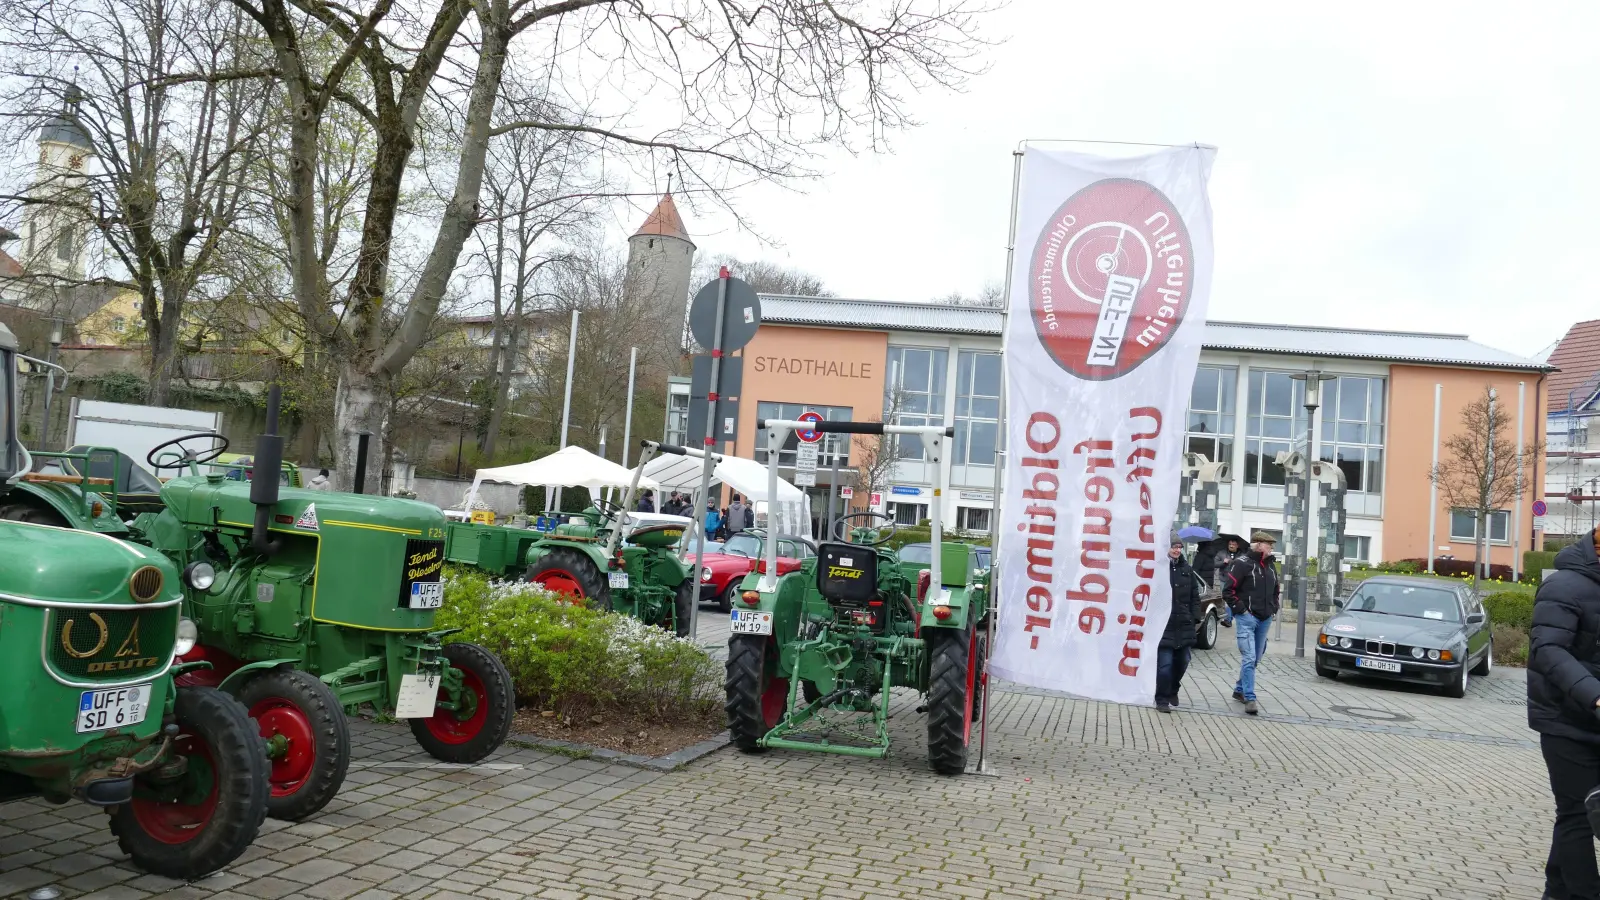 Ausnahmsweise keine Bauerndemo, sondern landwirtschaftliche Oldtimer unterschiedlicher Baujahre standen diesmal auf dem Uffenheimer Kolbudyplatz und vor der Stadthalle. (Foto: Sylvia Fehlinger)